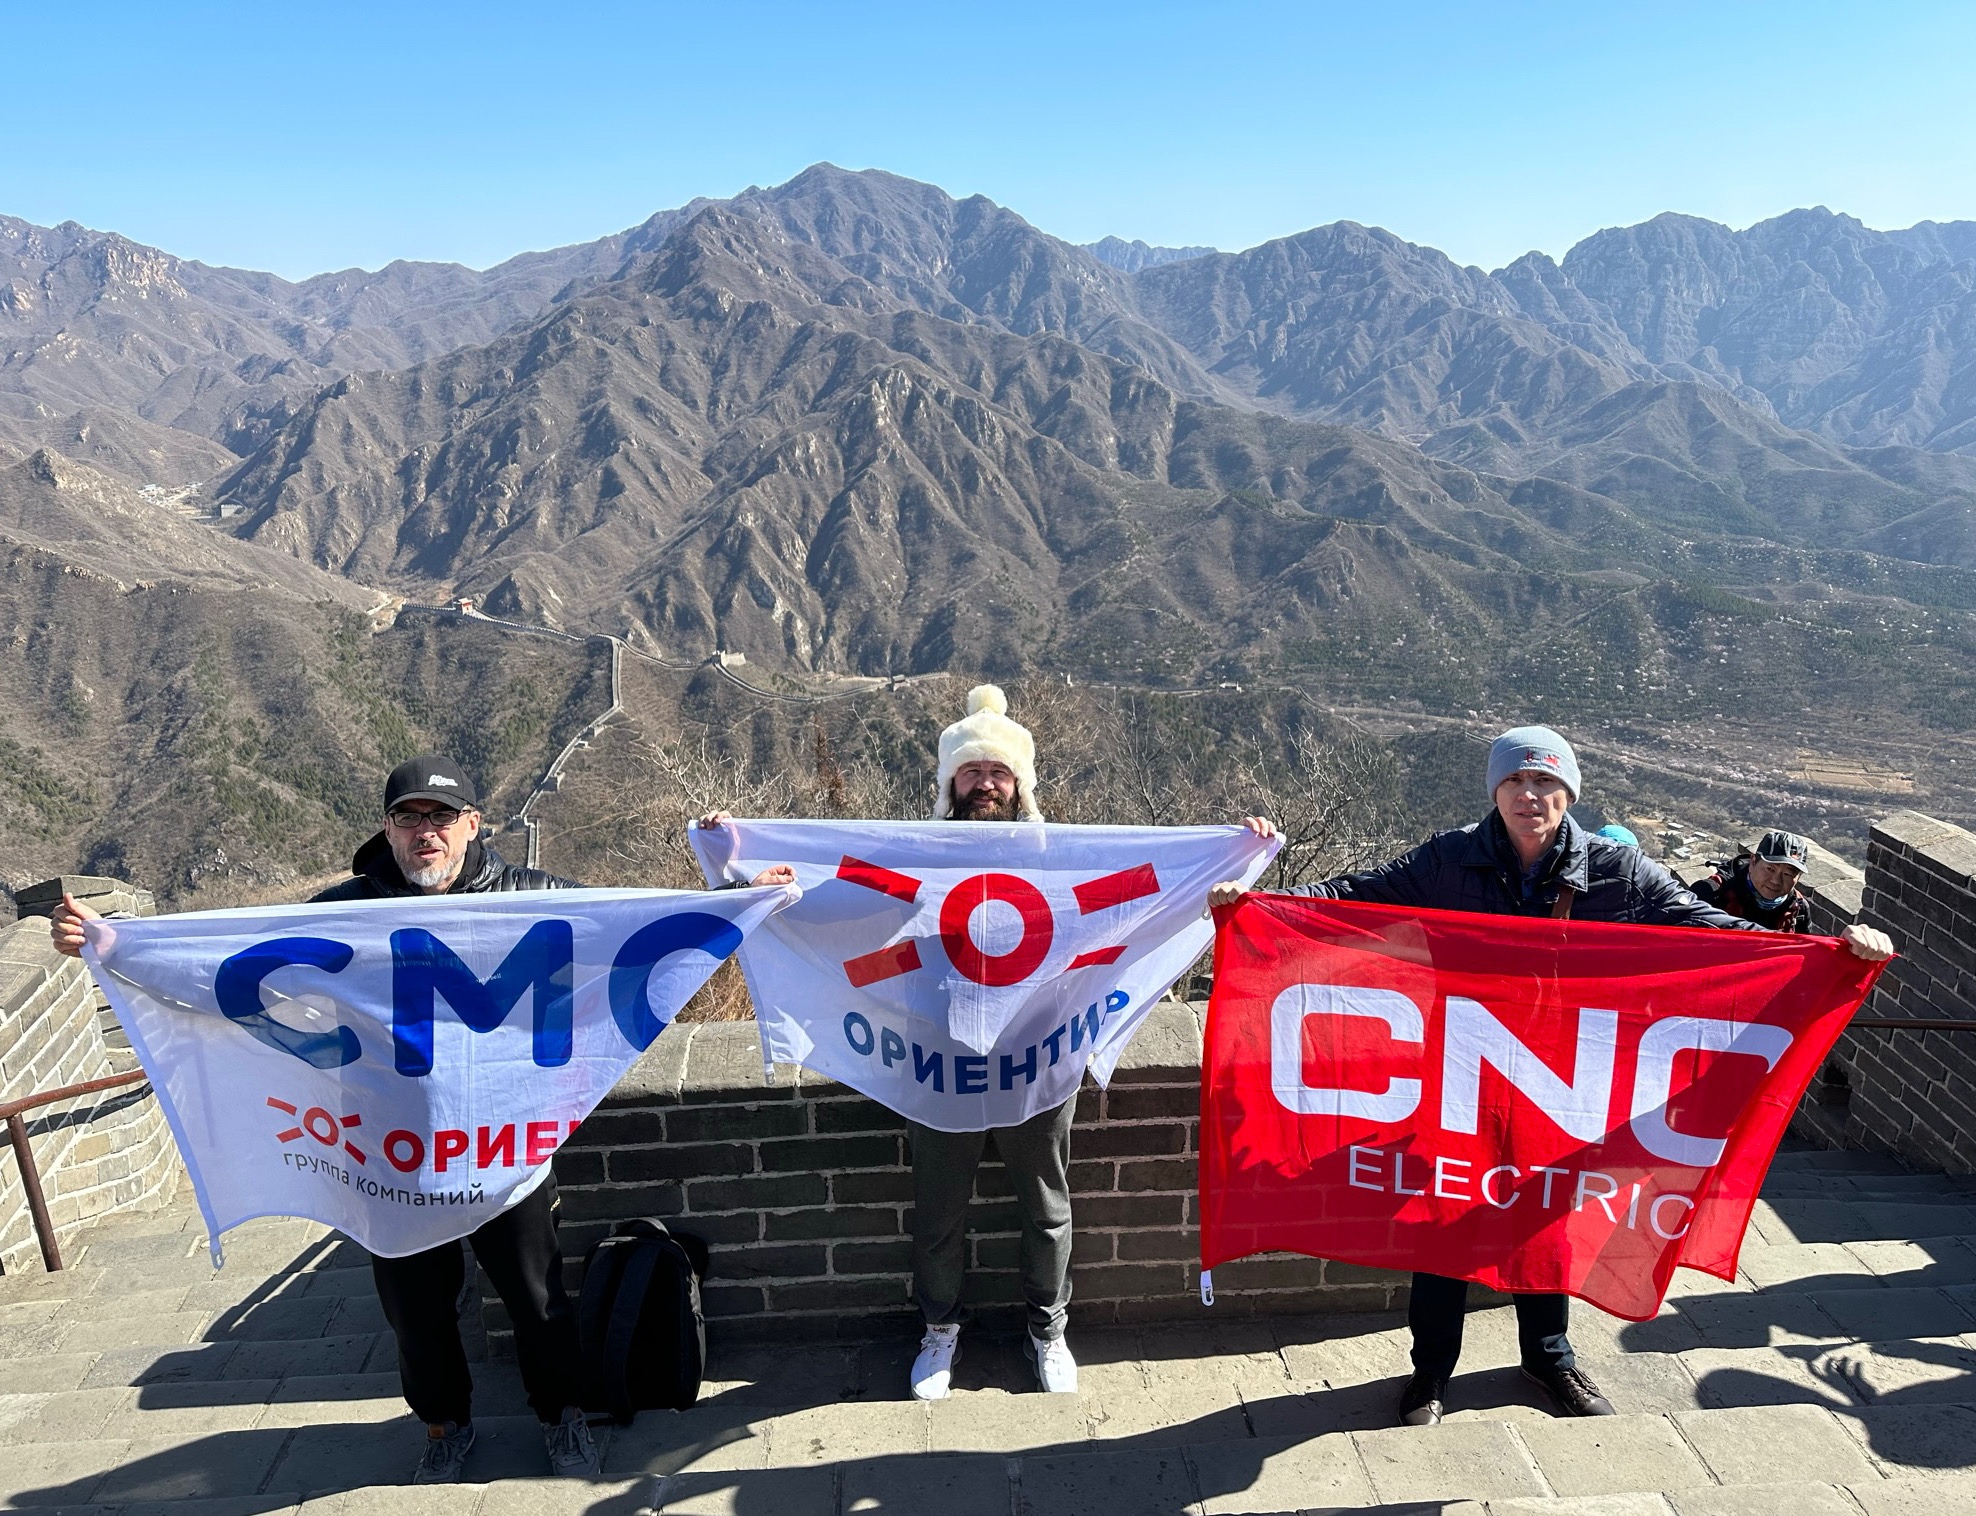 CNC |Russyske klantfertsjintwurdigers klommen de Peak fan 'e Grutte Muorre út namme fan CNC Electric